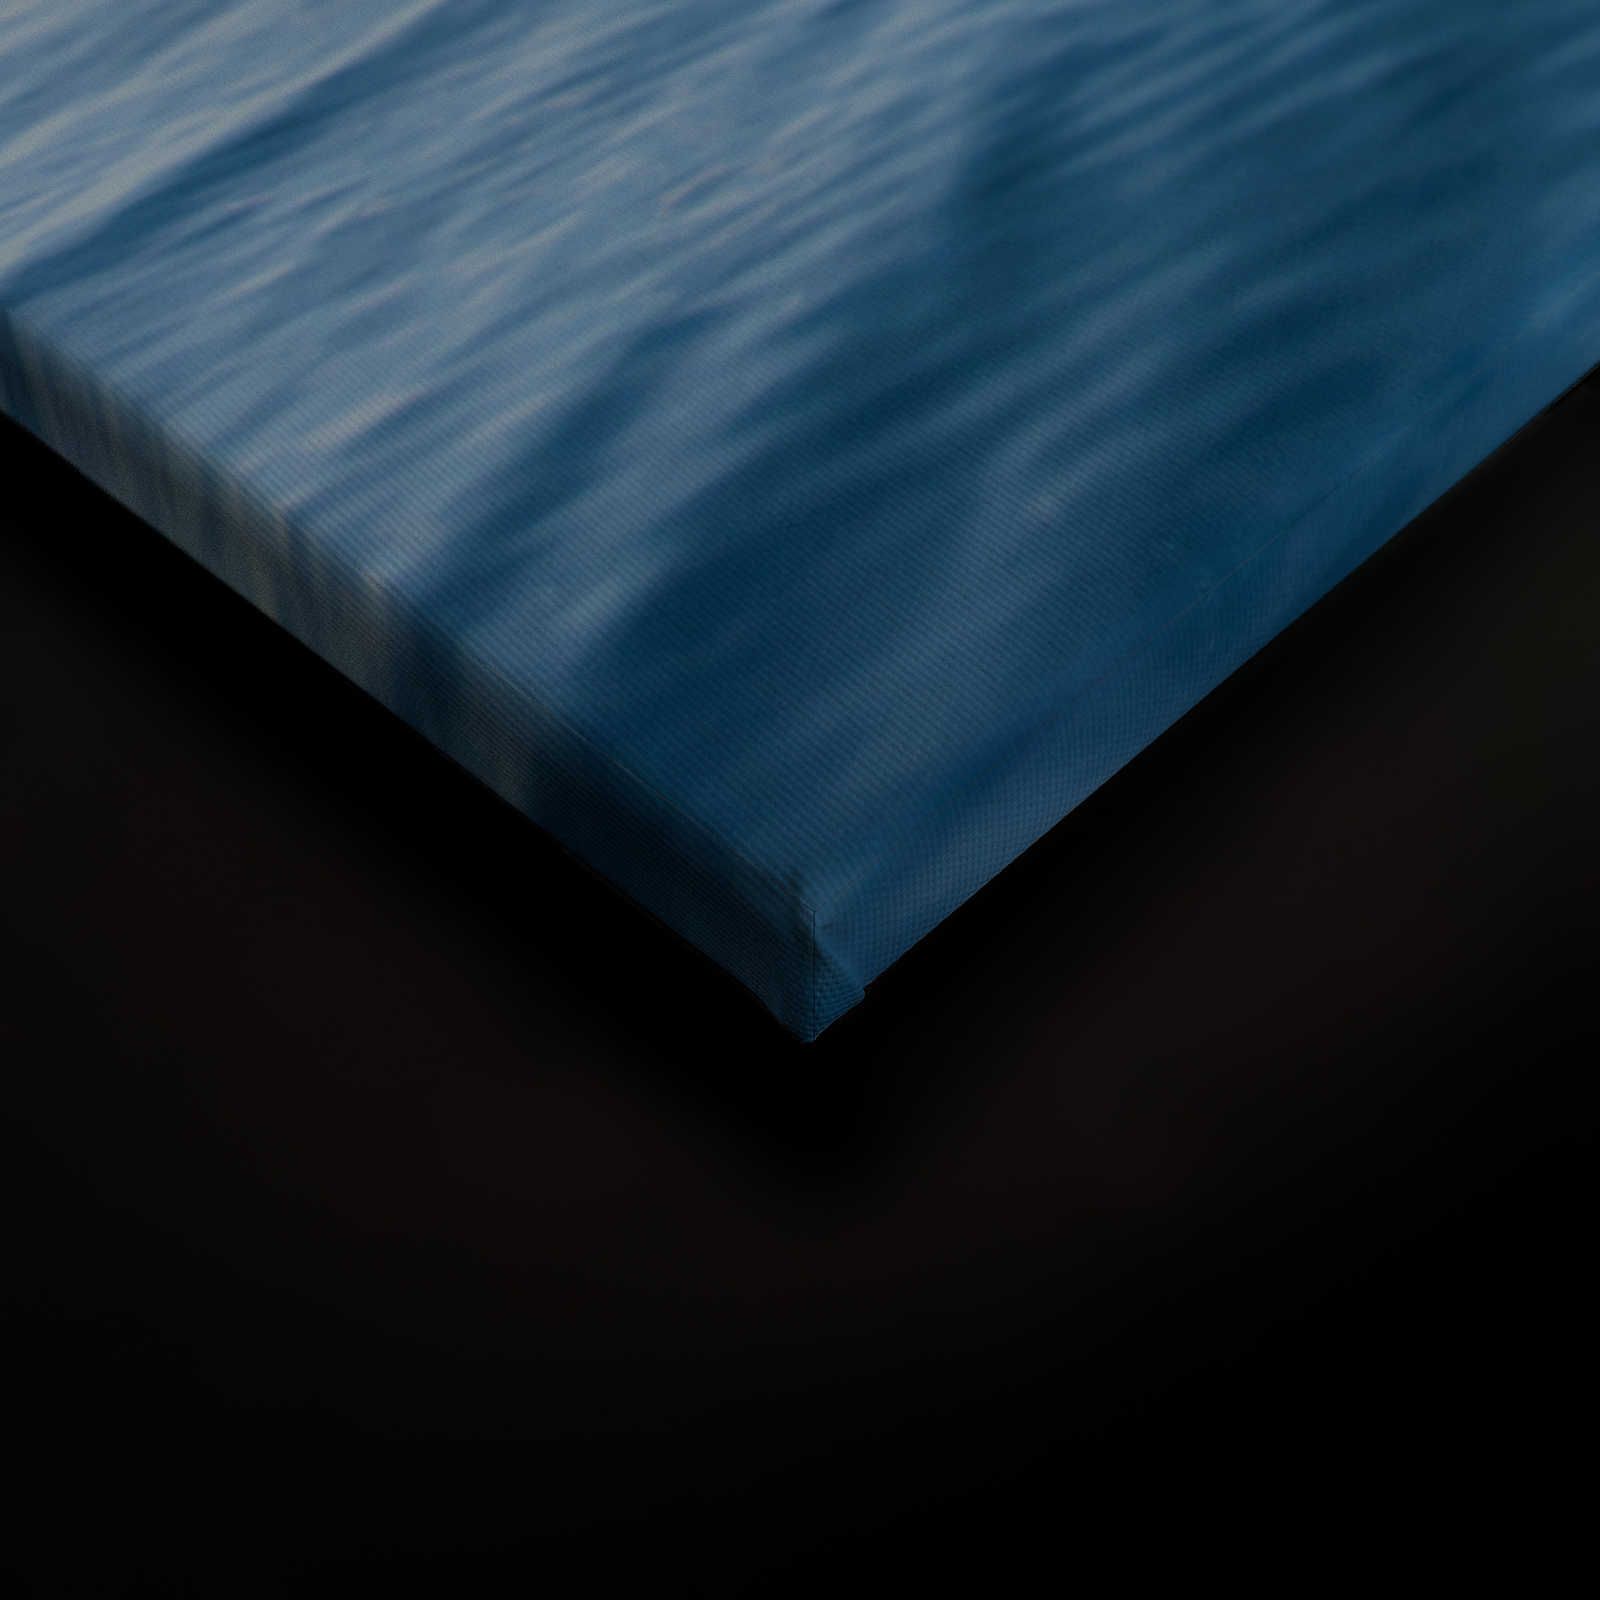             Quadro su tela con mare aperto e nuvole - 0,90 m x 0,60 m
        